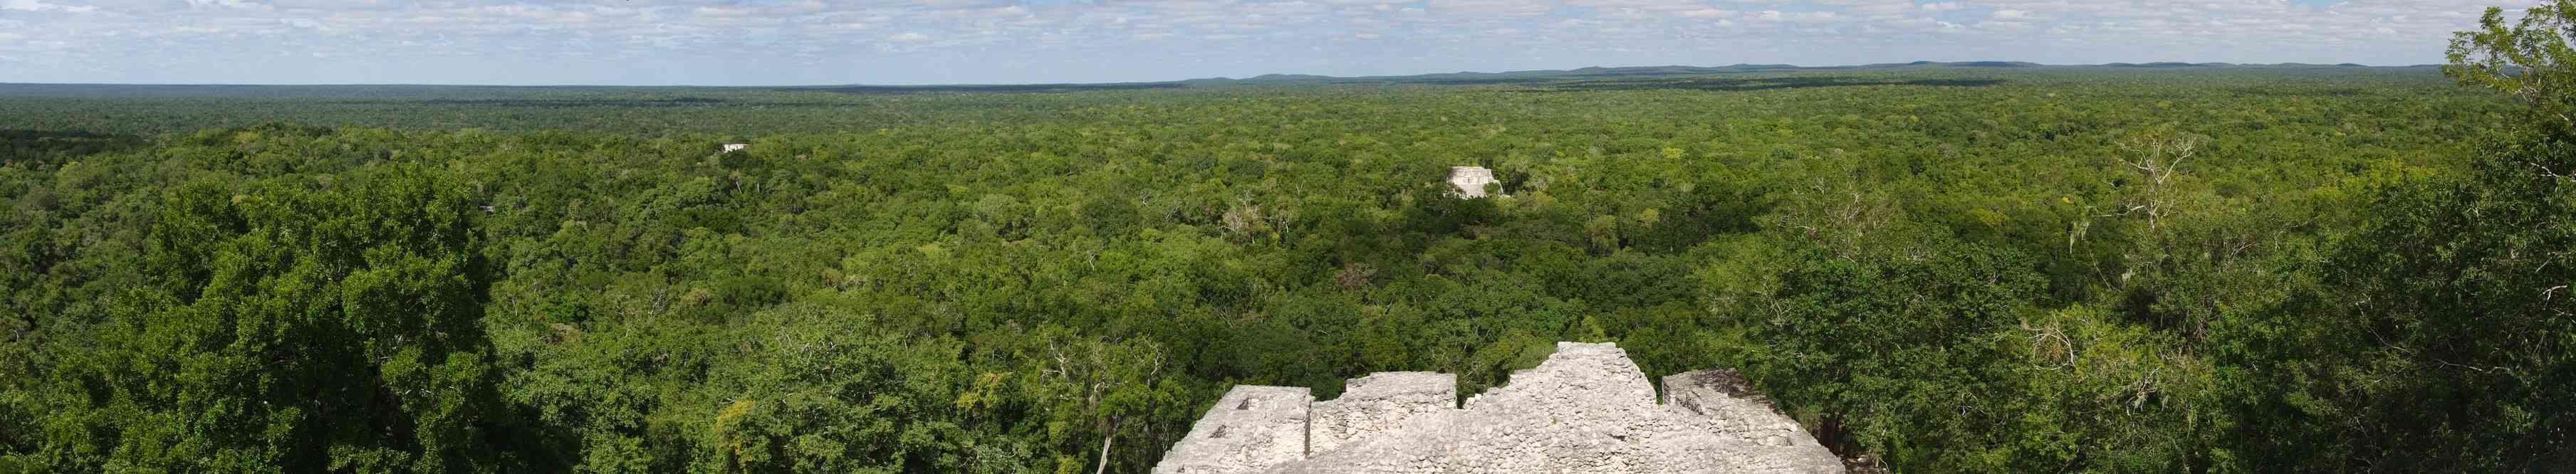 Calakmul (panoramique de la forêt depuis la grande pyramide), le 24 janvier 2016